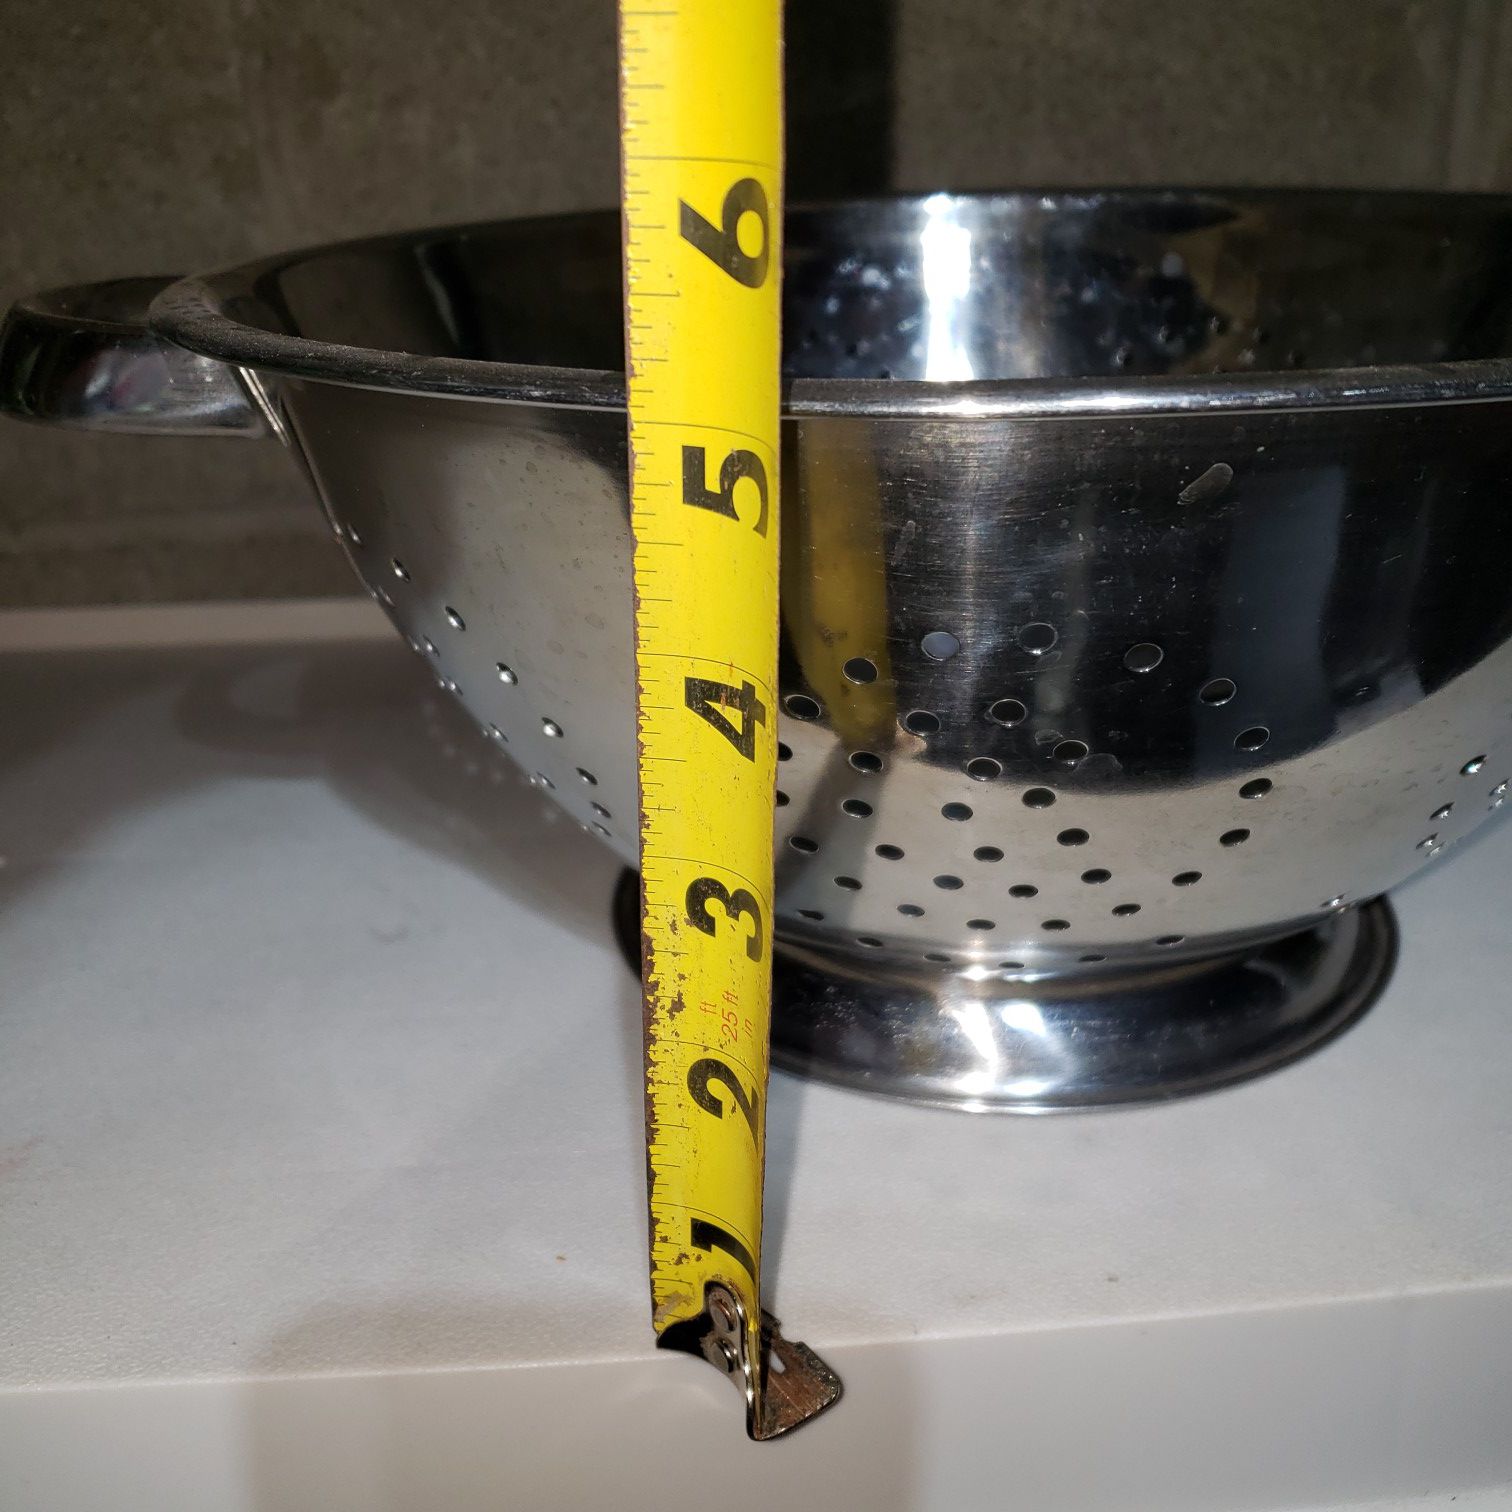 11 inch strainer for pasta colander for noodles